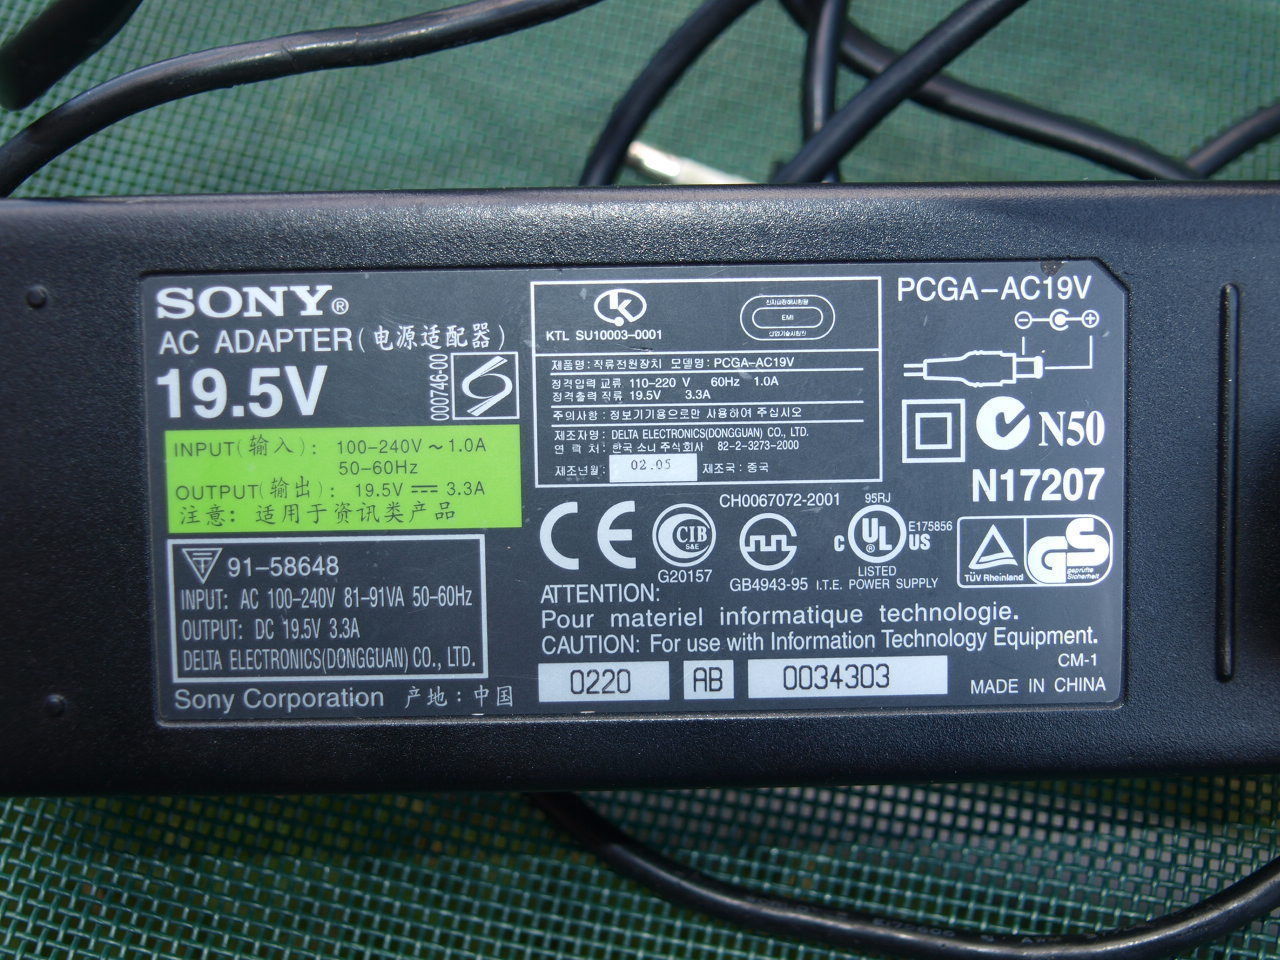 OEM 19.5V Adapter Power Supply Sony Vaio PCGA-AC19V1 VGP-AC19V43 VGP-AC19V48 - $32.65